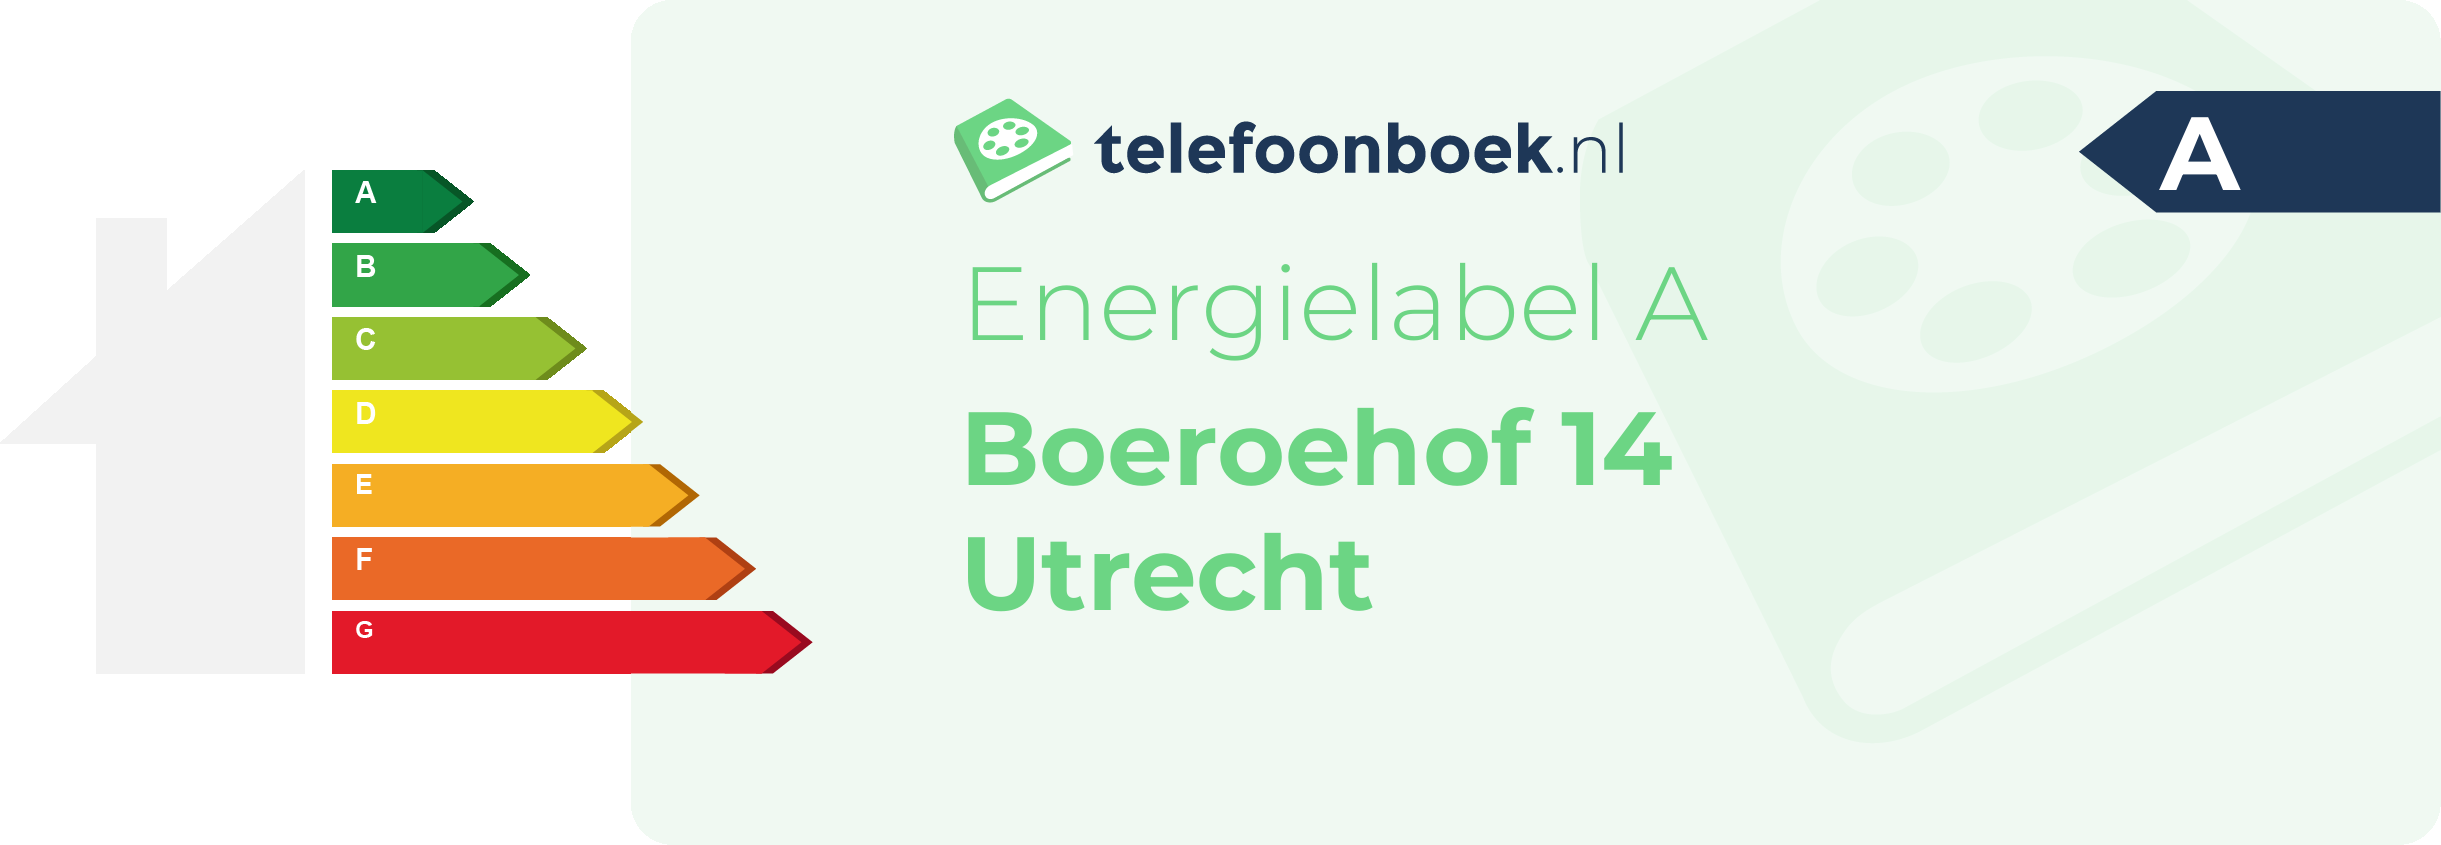 Energielabel Boeroehof 14 Utrecht